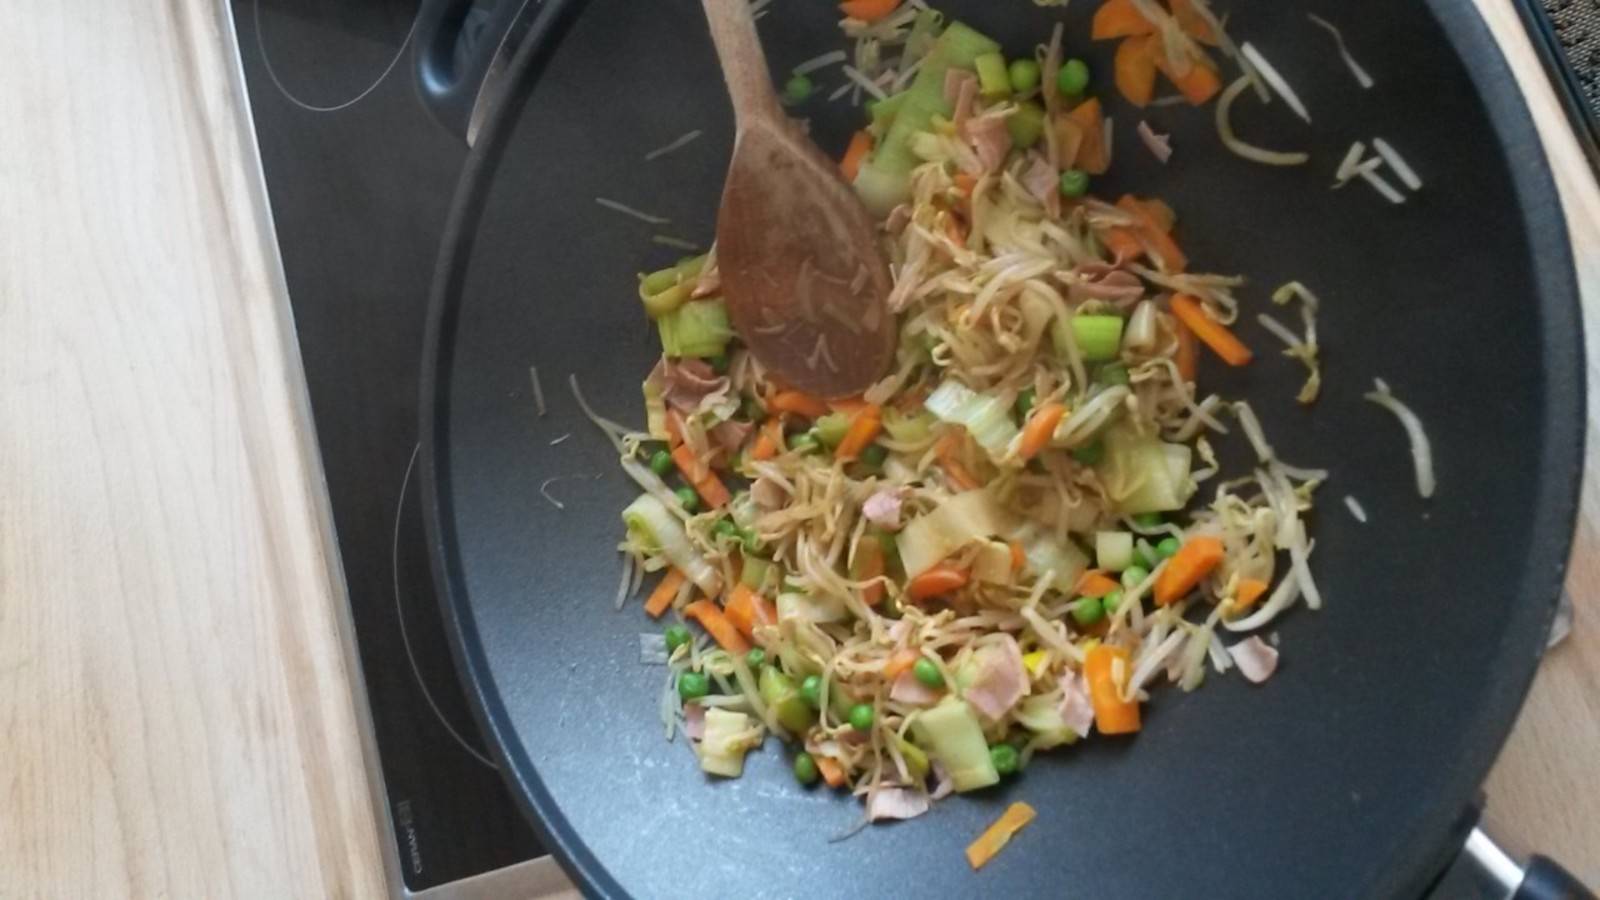 Buntes Wok-Gemüse mit Schinken